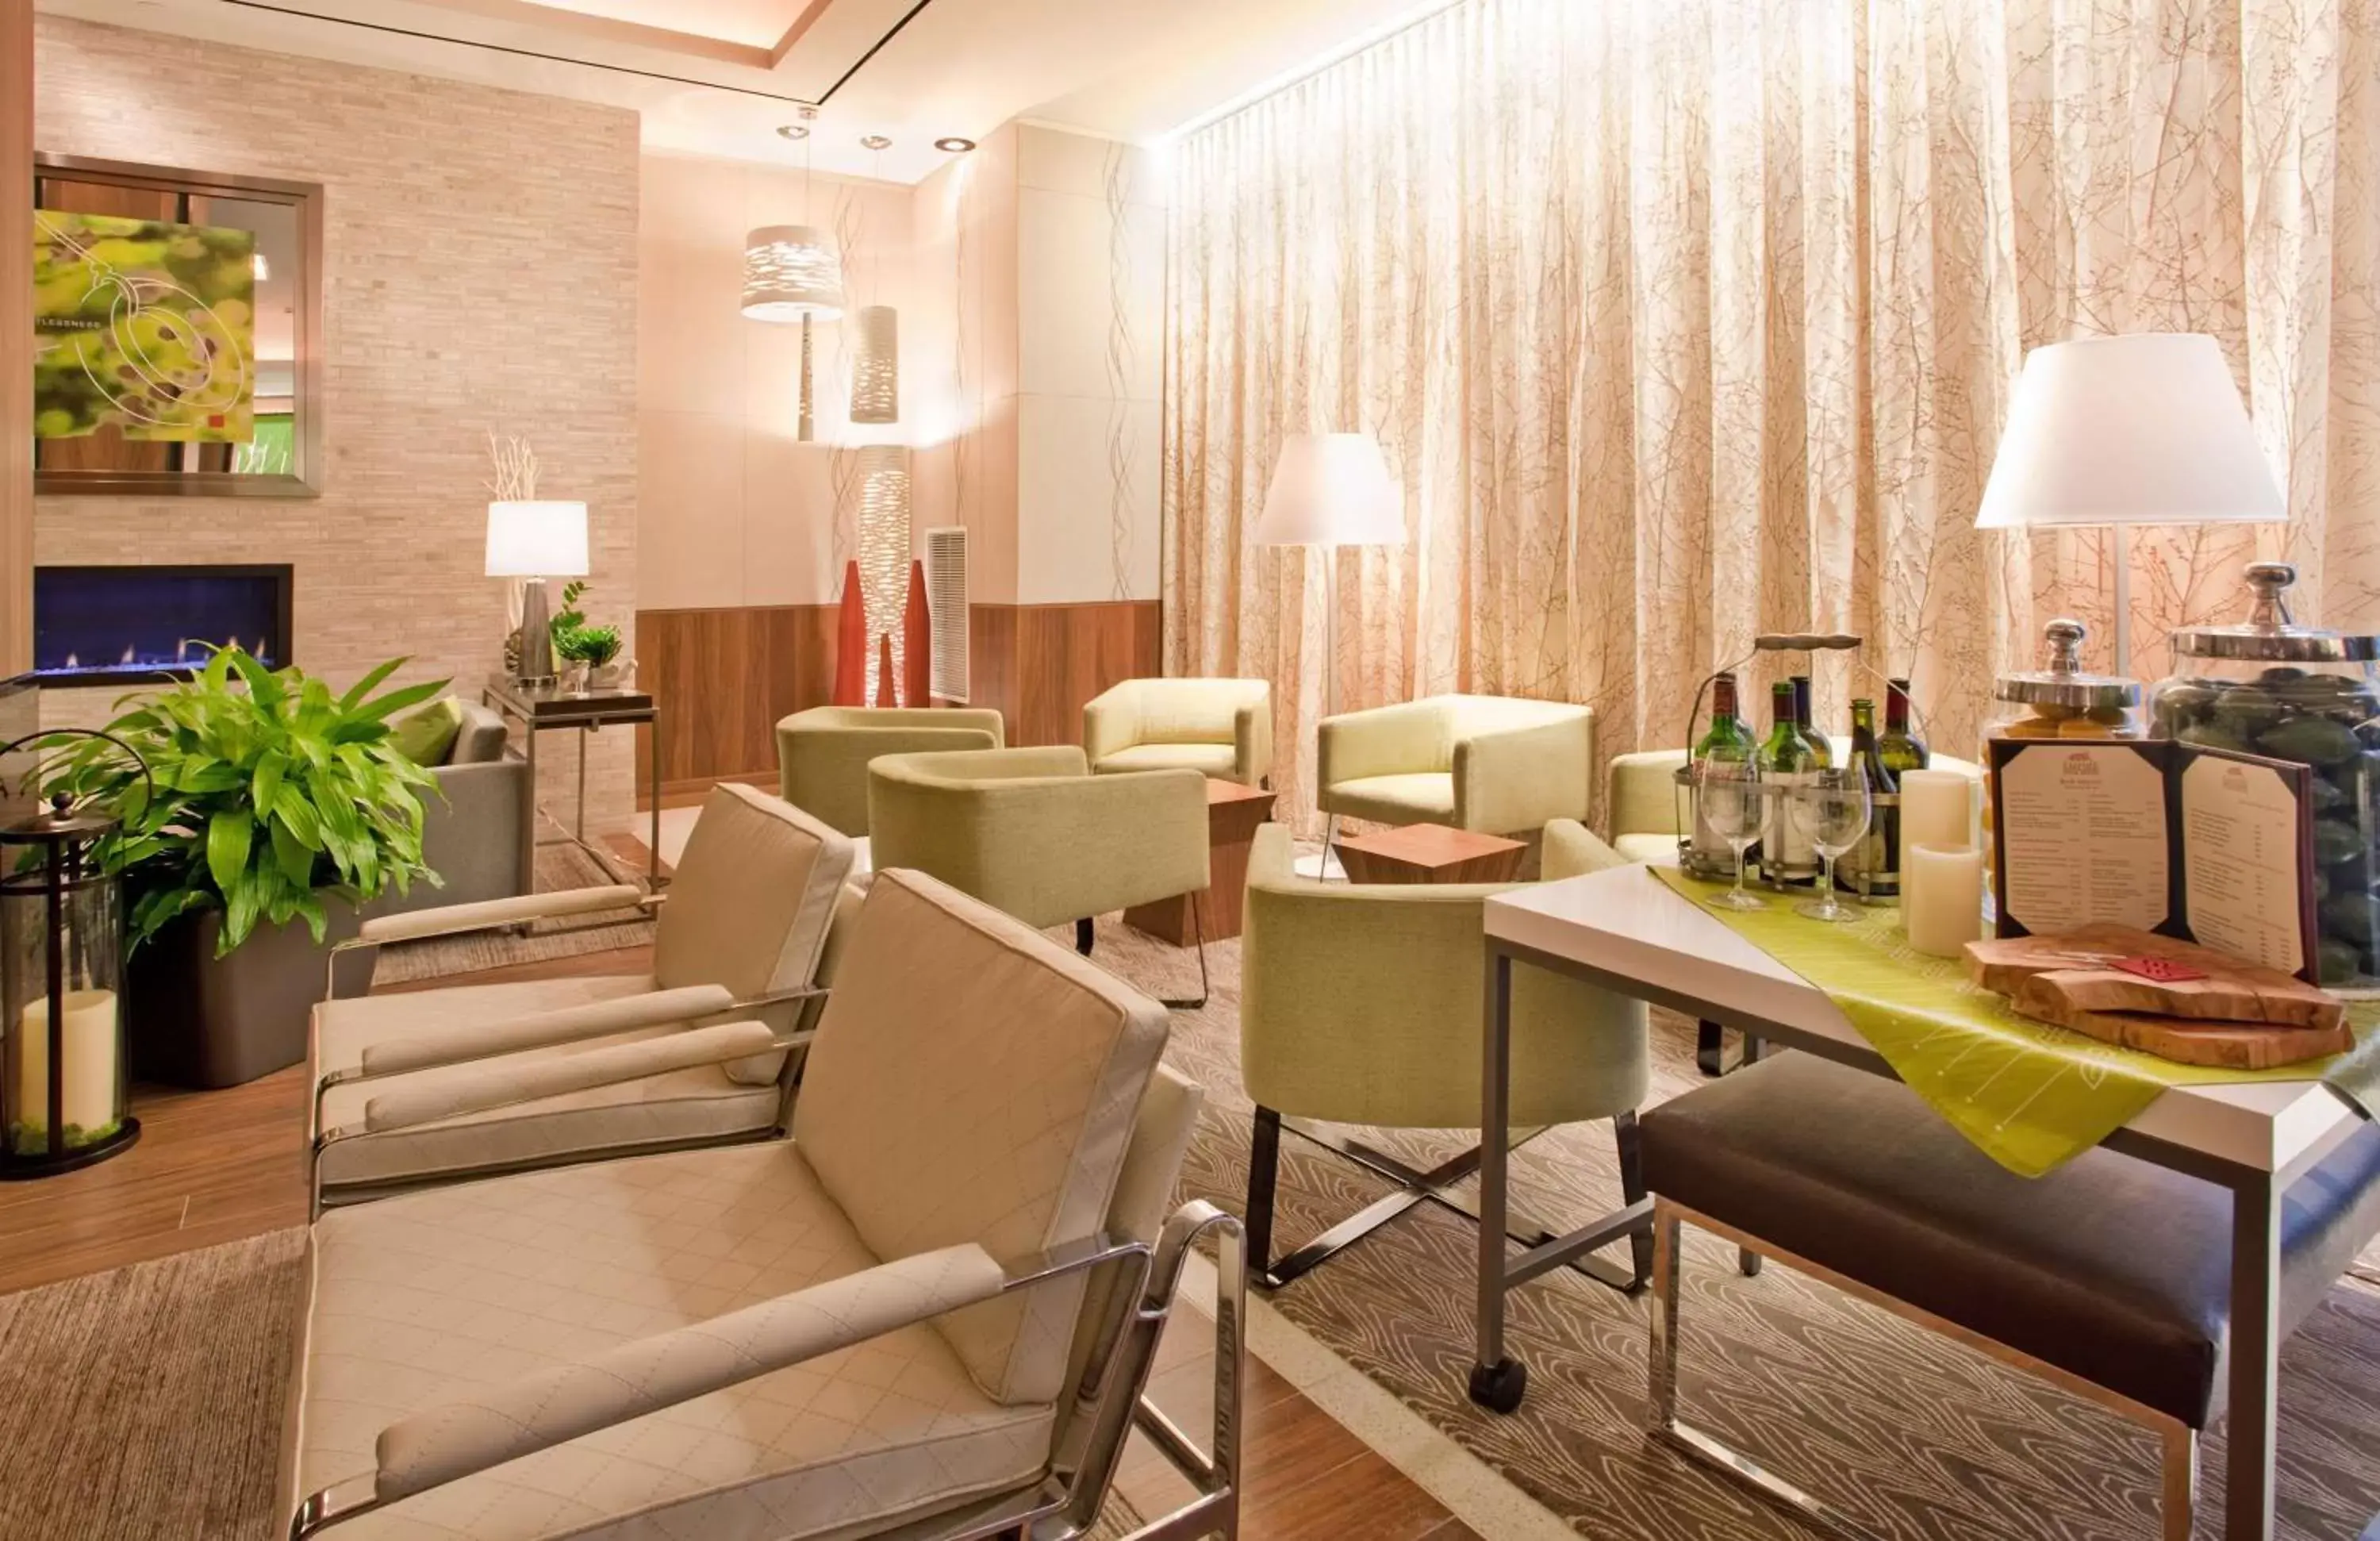 Lobby or reception, Lounge/Bar in Hilton Garden Inn New York Central Park South-Midtown West